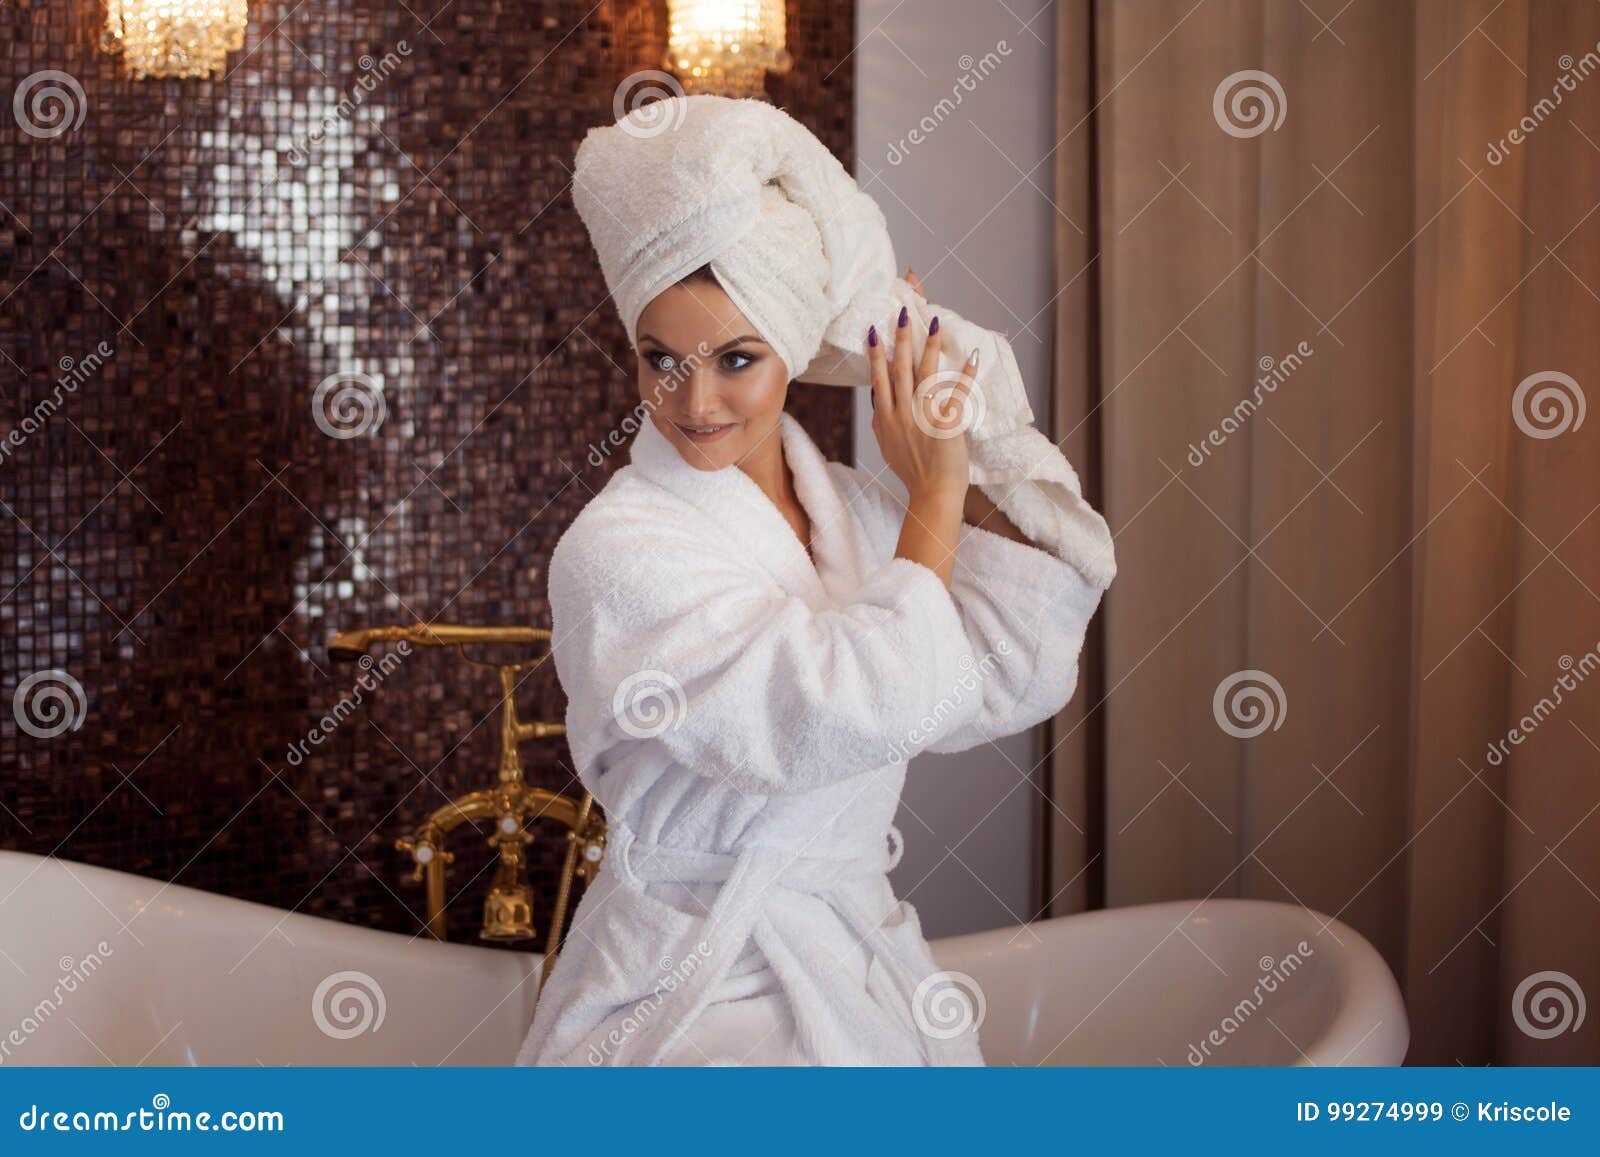 Сестра после ванной. Девушка в халате и полотенце на голове. Фотосессия в халате и полотенце. Девушка с полотенцем на голове. Девушка в халате ванна.